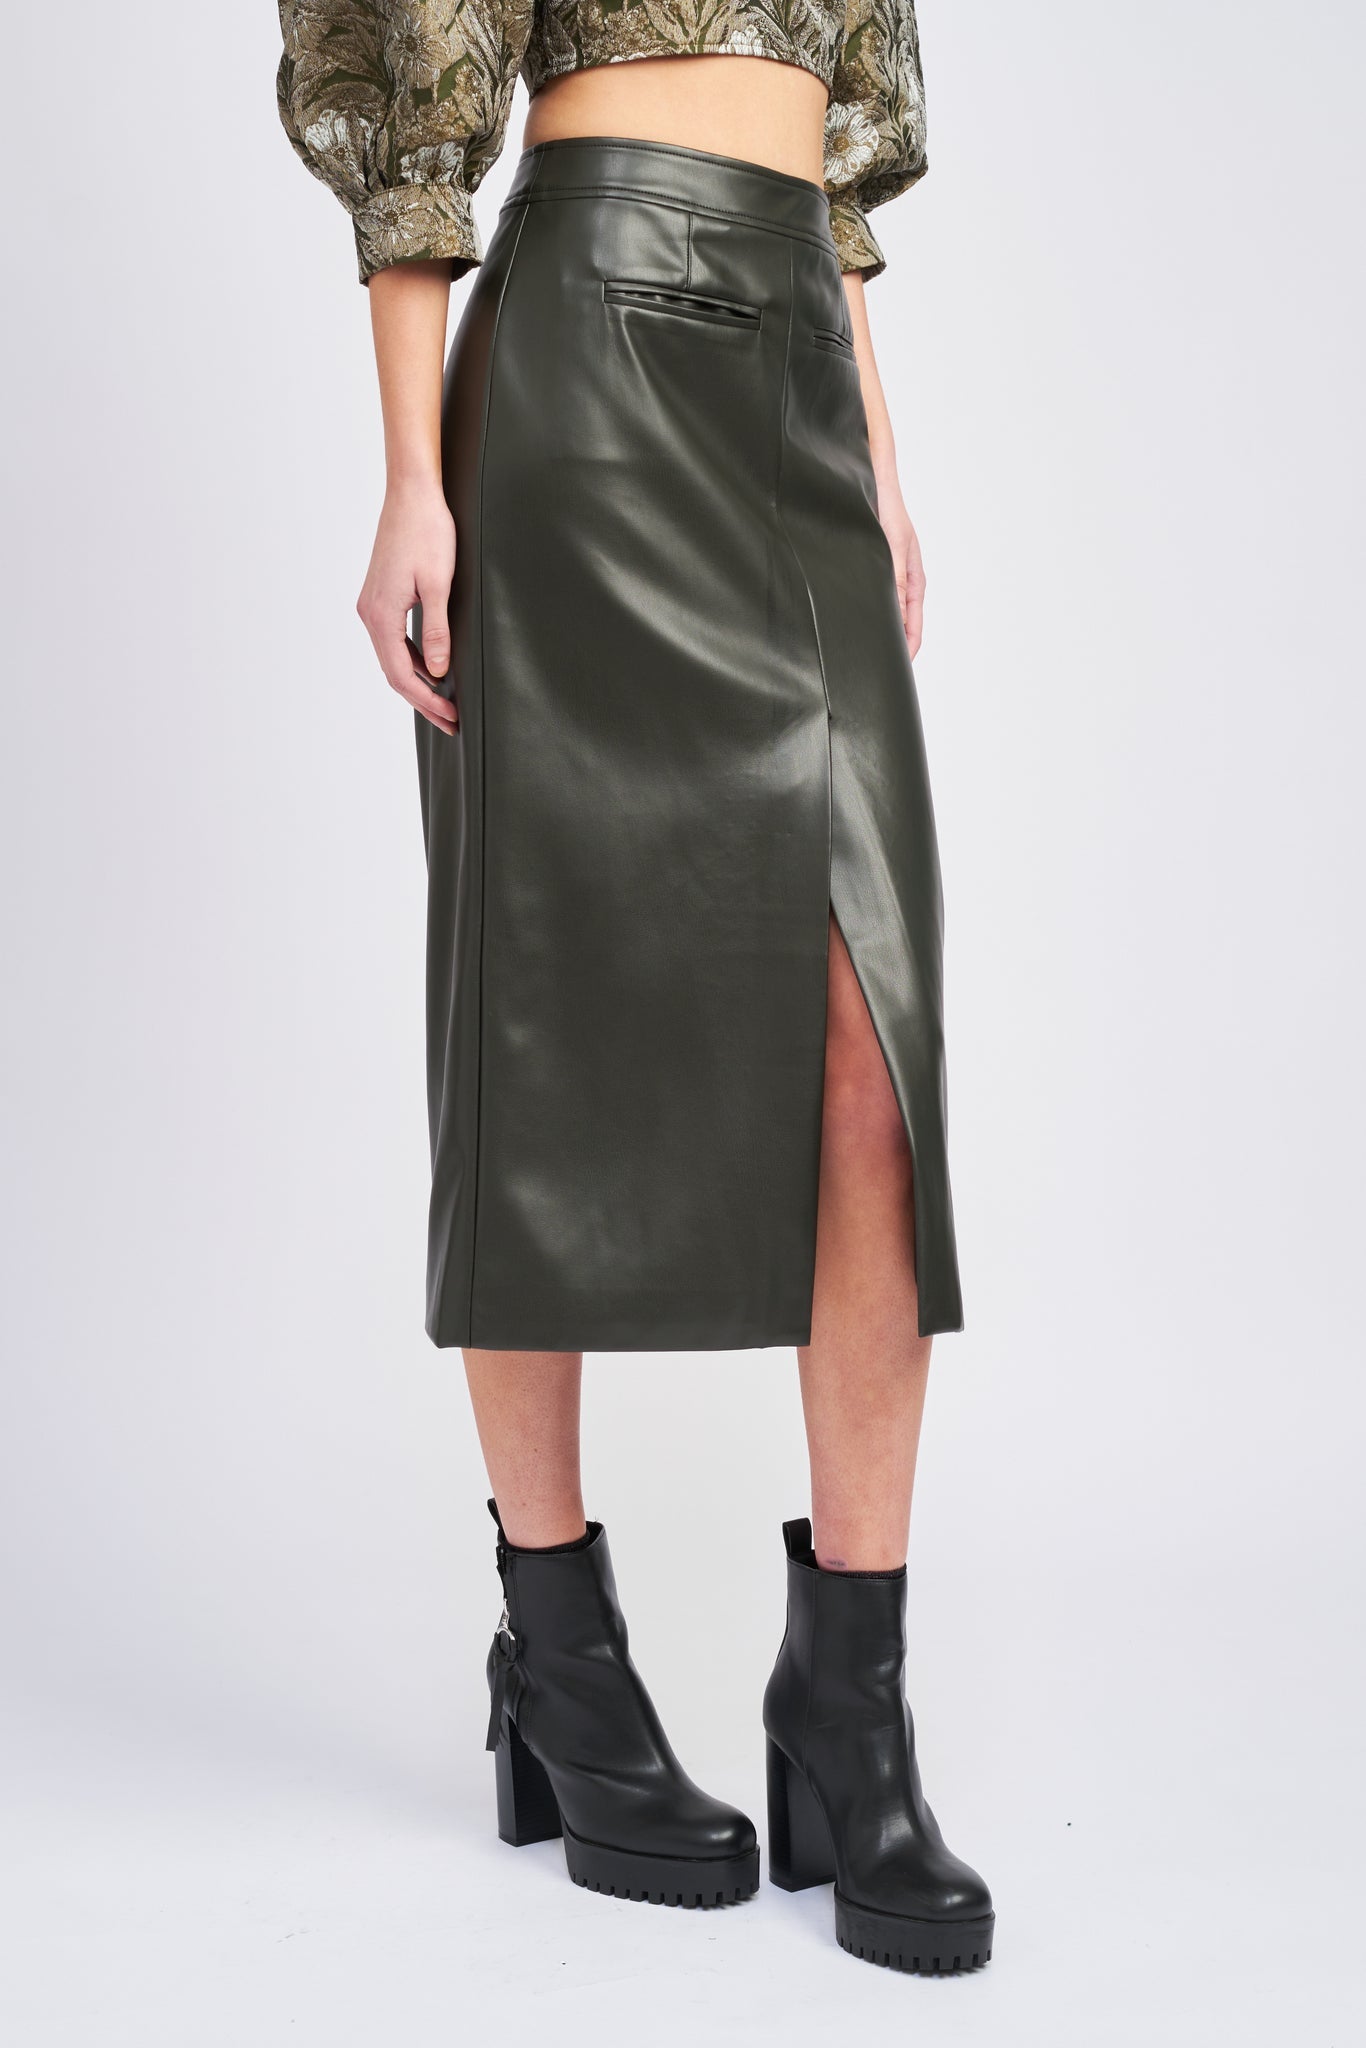 Layne Midi Skirt- Olive